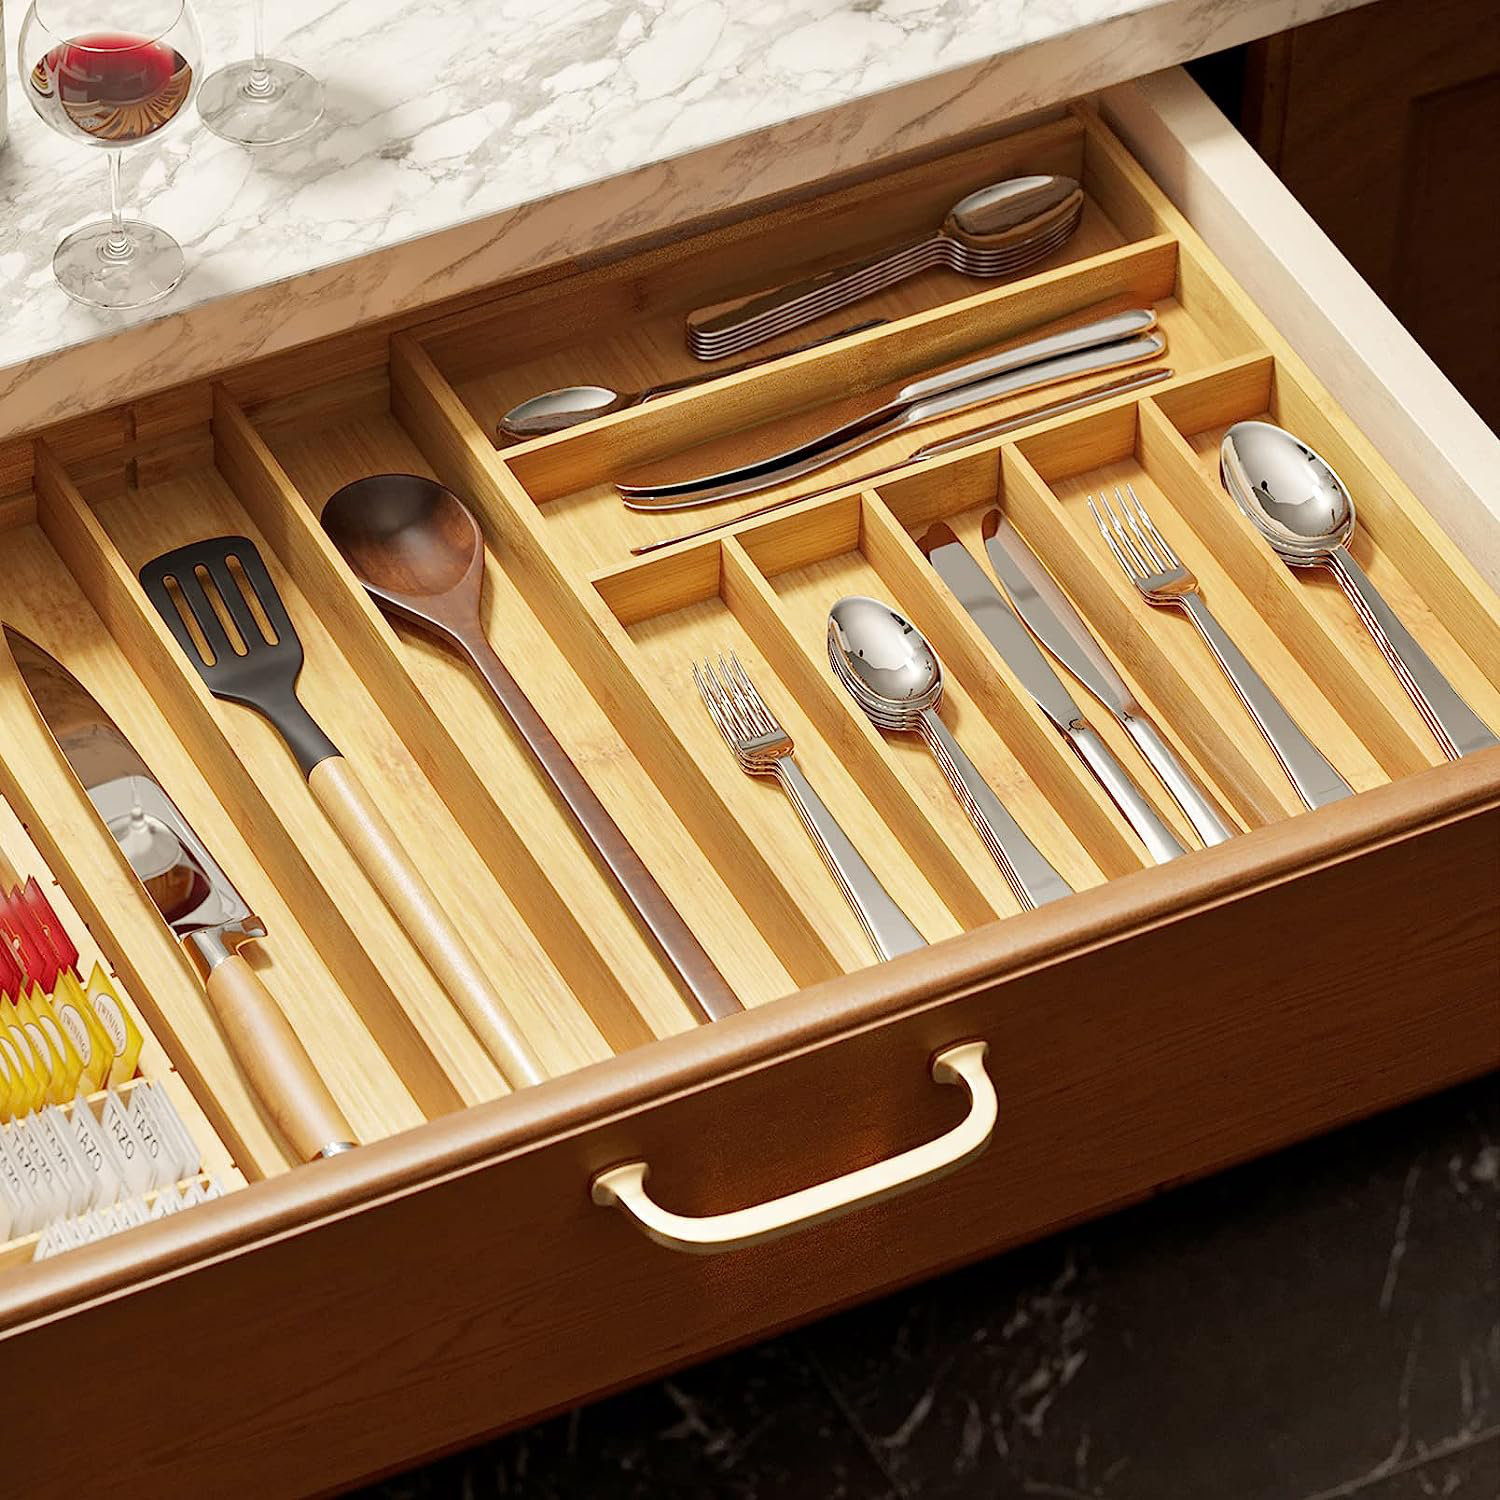 https://assets.wfcdn.com/im/18653603/compr-r85/2593/259382862/mecedes-2-h-x-126-w-x-169-d-flatware-kitchen-utensils-drawer-organizer.jpg